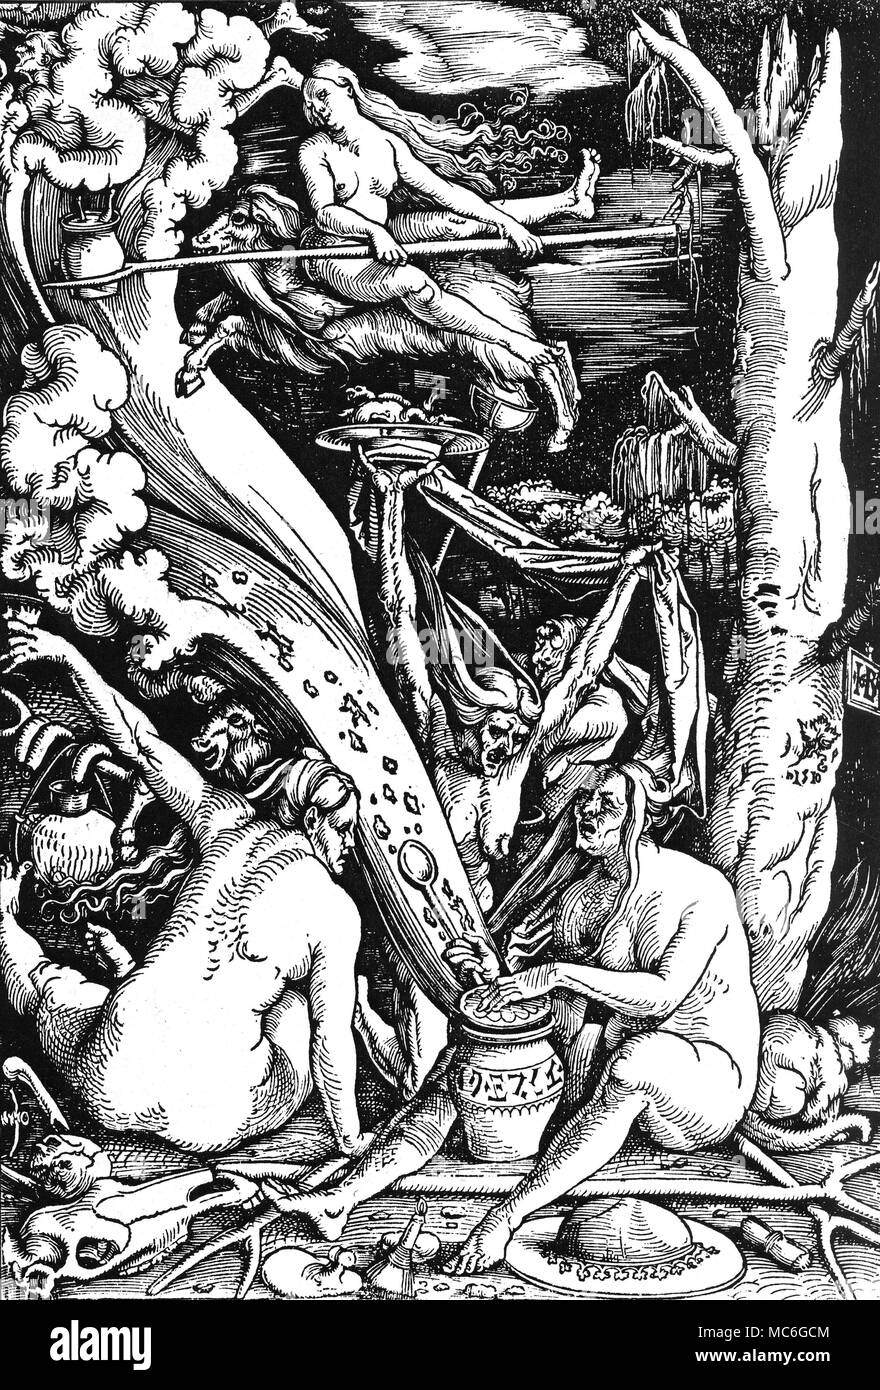 La sorcellerie - TRANSVECTING "sorcières les sorcières" - gravure sur bois  par Hans Baldung Grien, 1510. Les sorcières sont deux transvecting - une  apparemment sur un nuage, l'autre sur le dos d'une